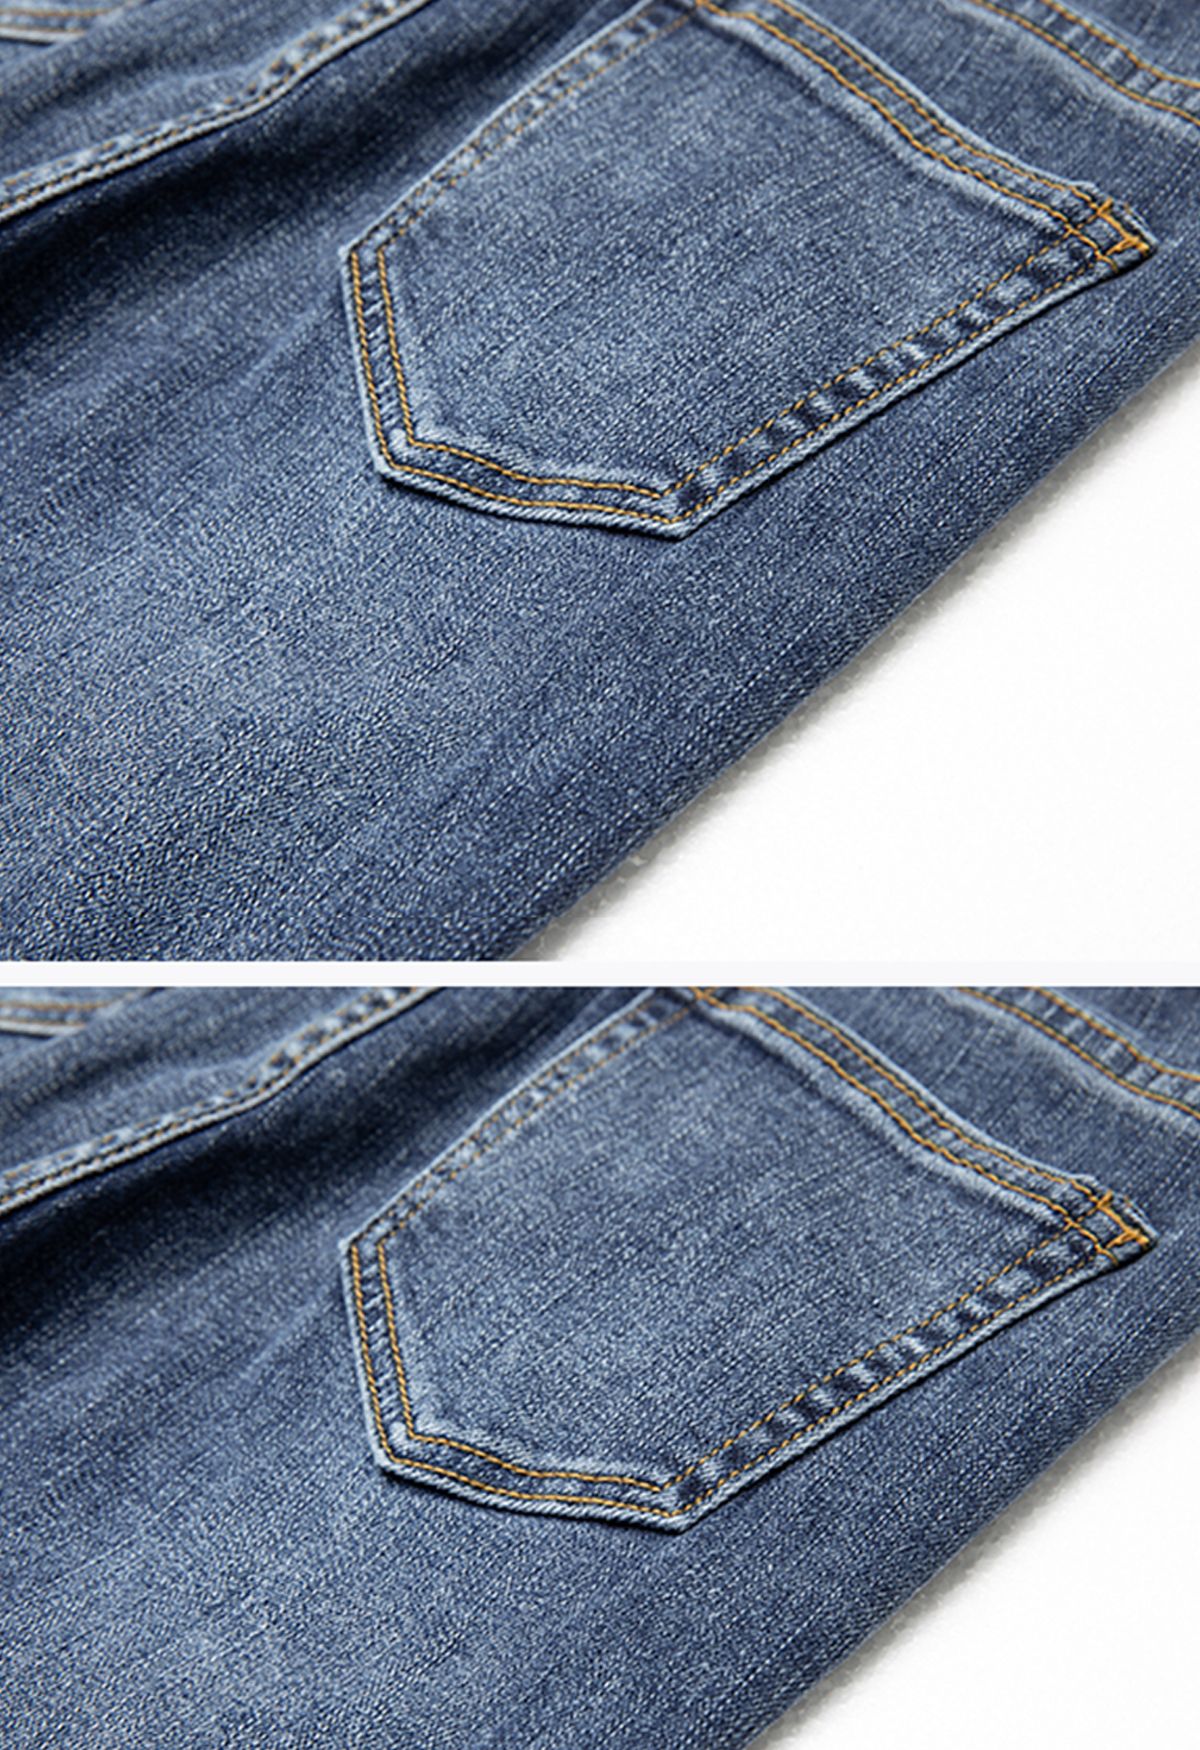 Jeans skinny cropped com detalhe rasgado